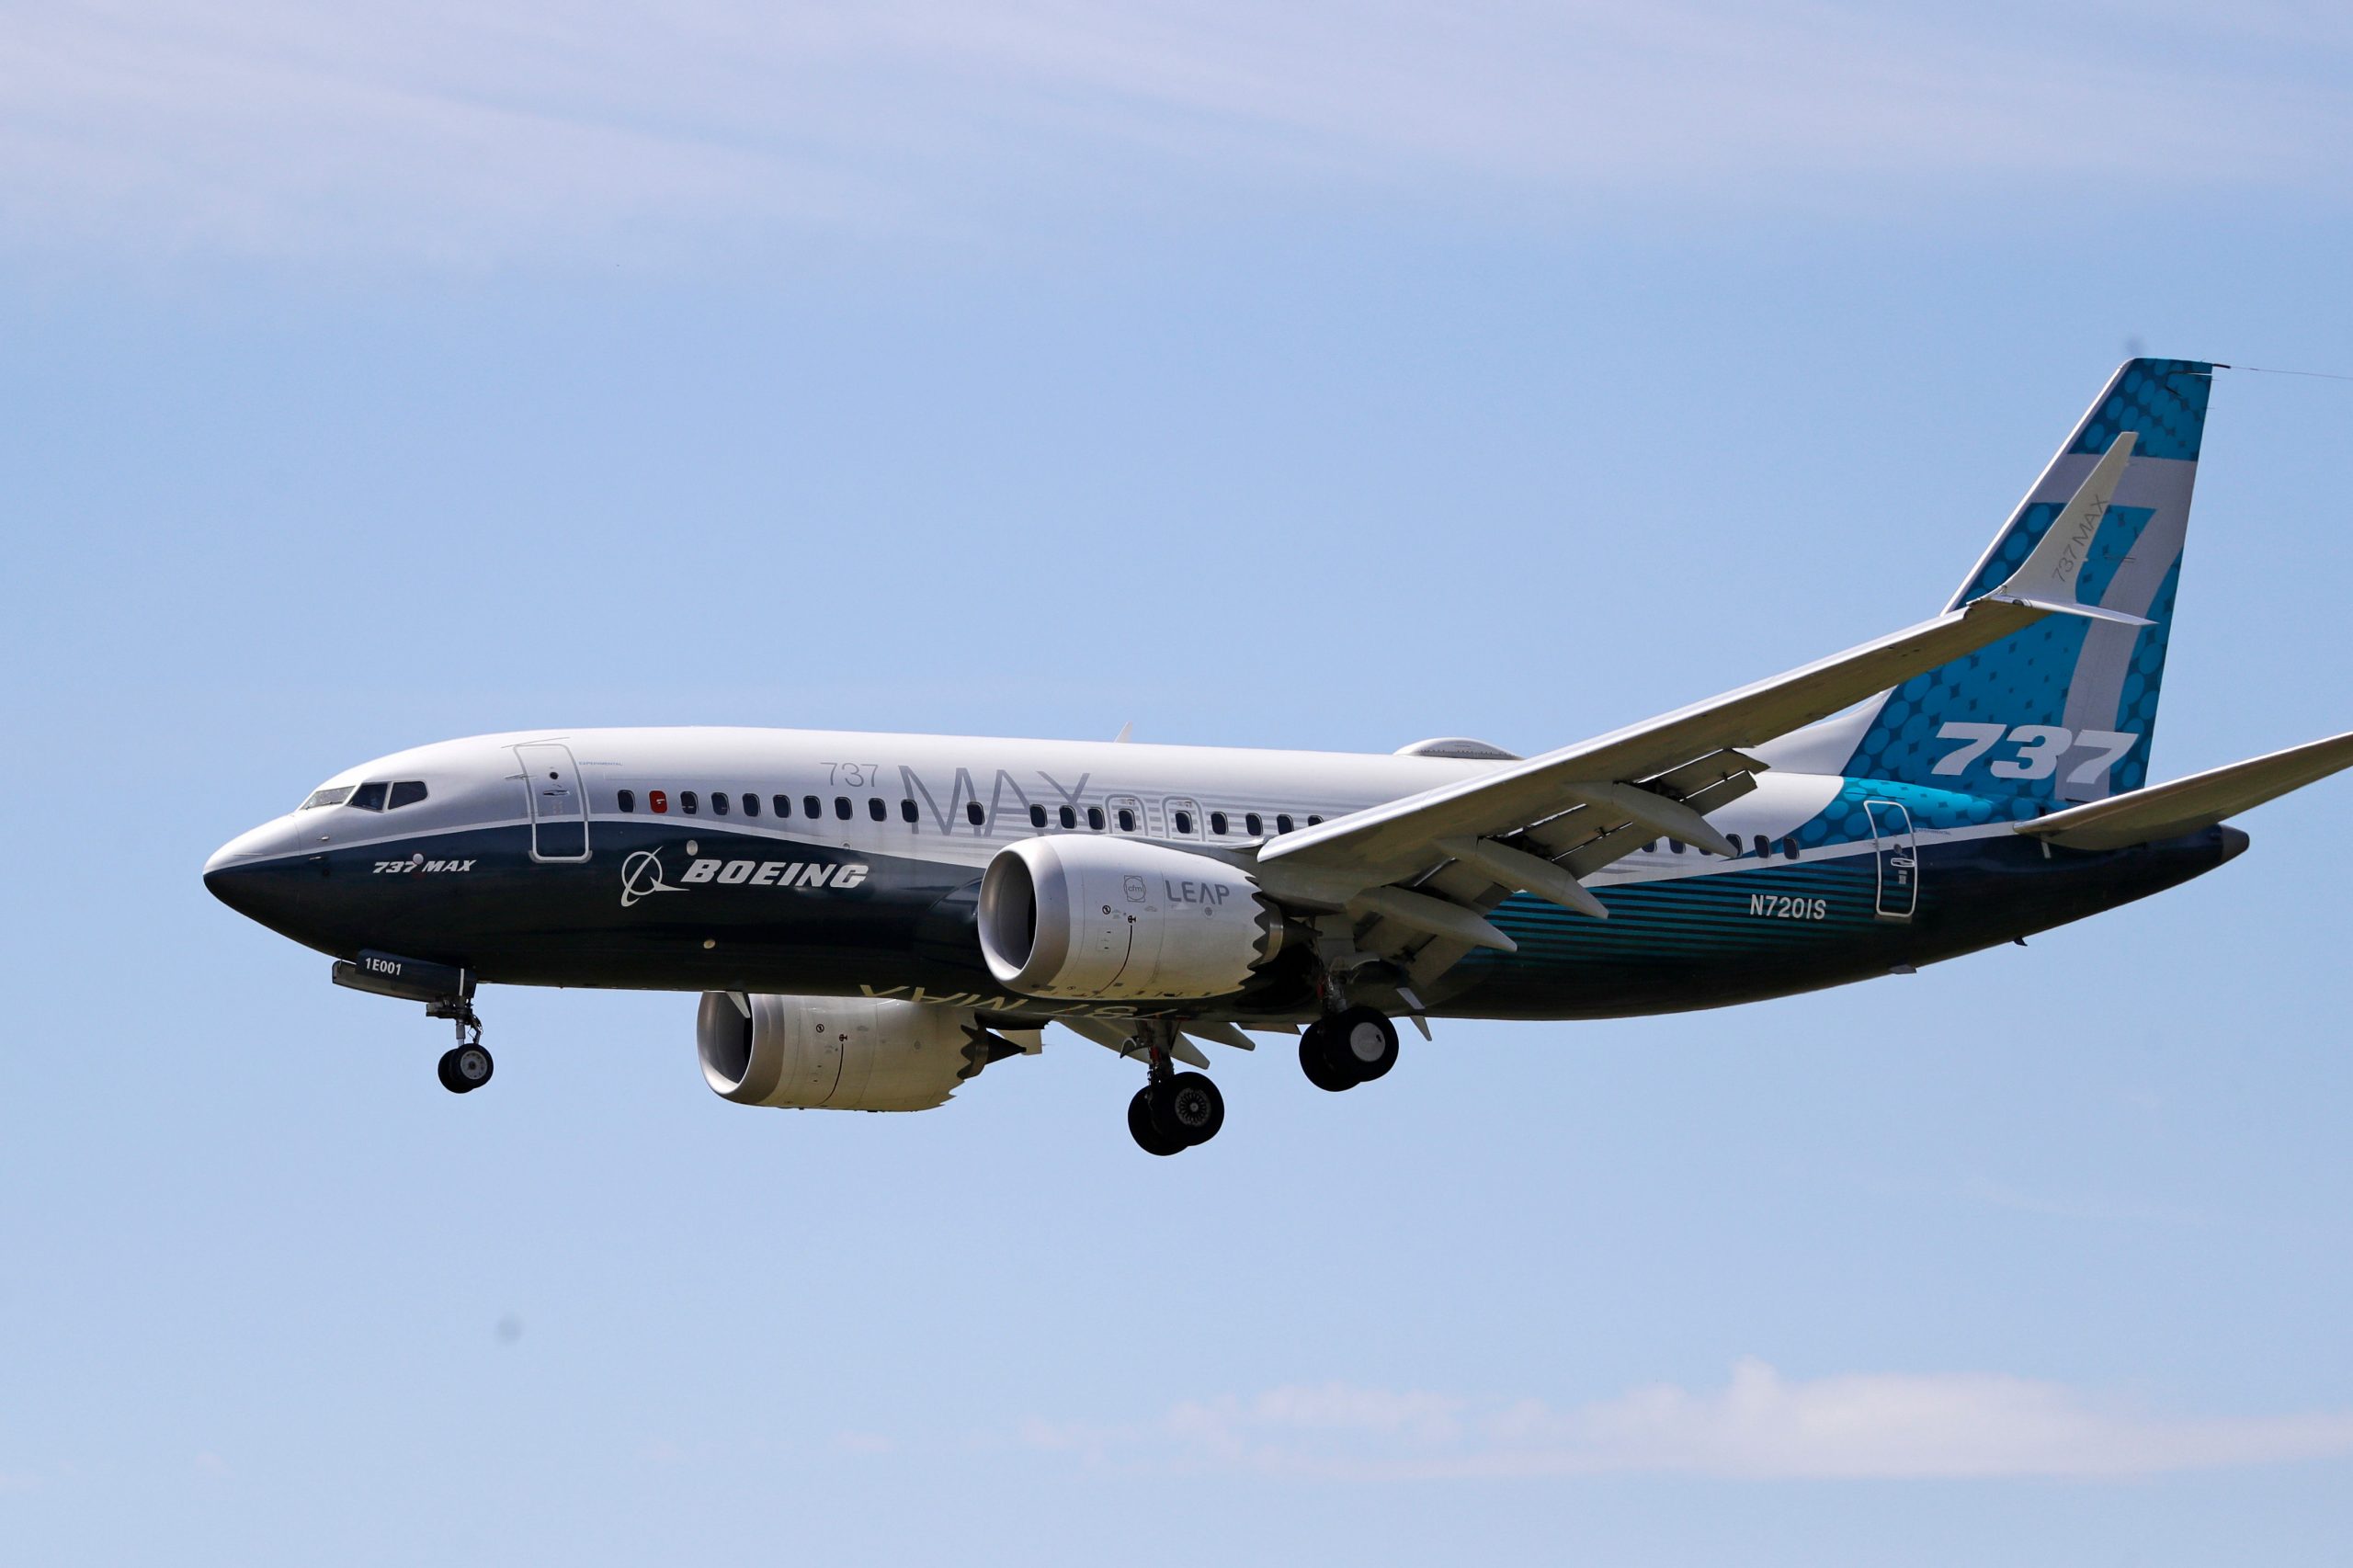 Boeing 737 cargo makes emergency landing in Honolulu, both pilots rescued